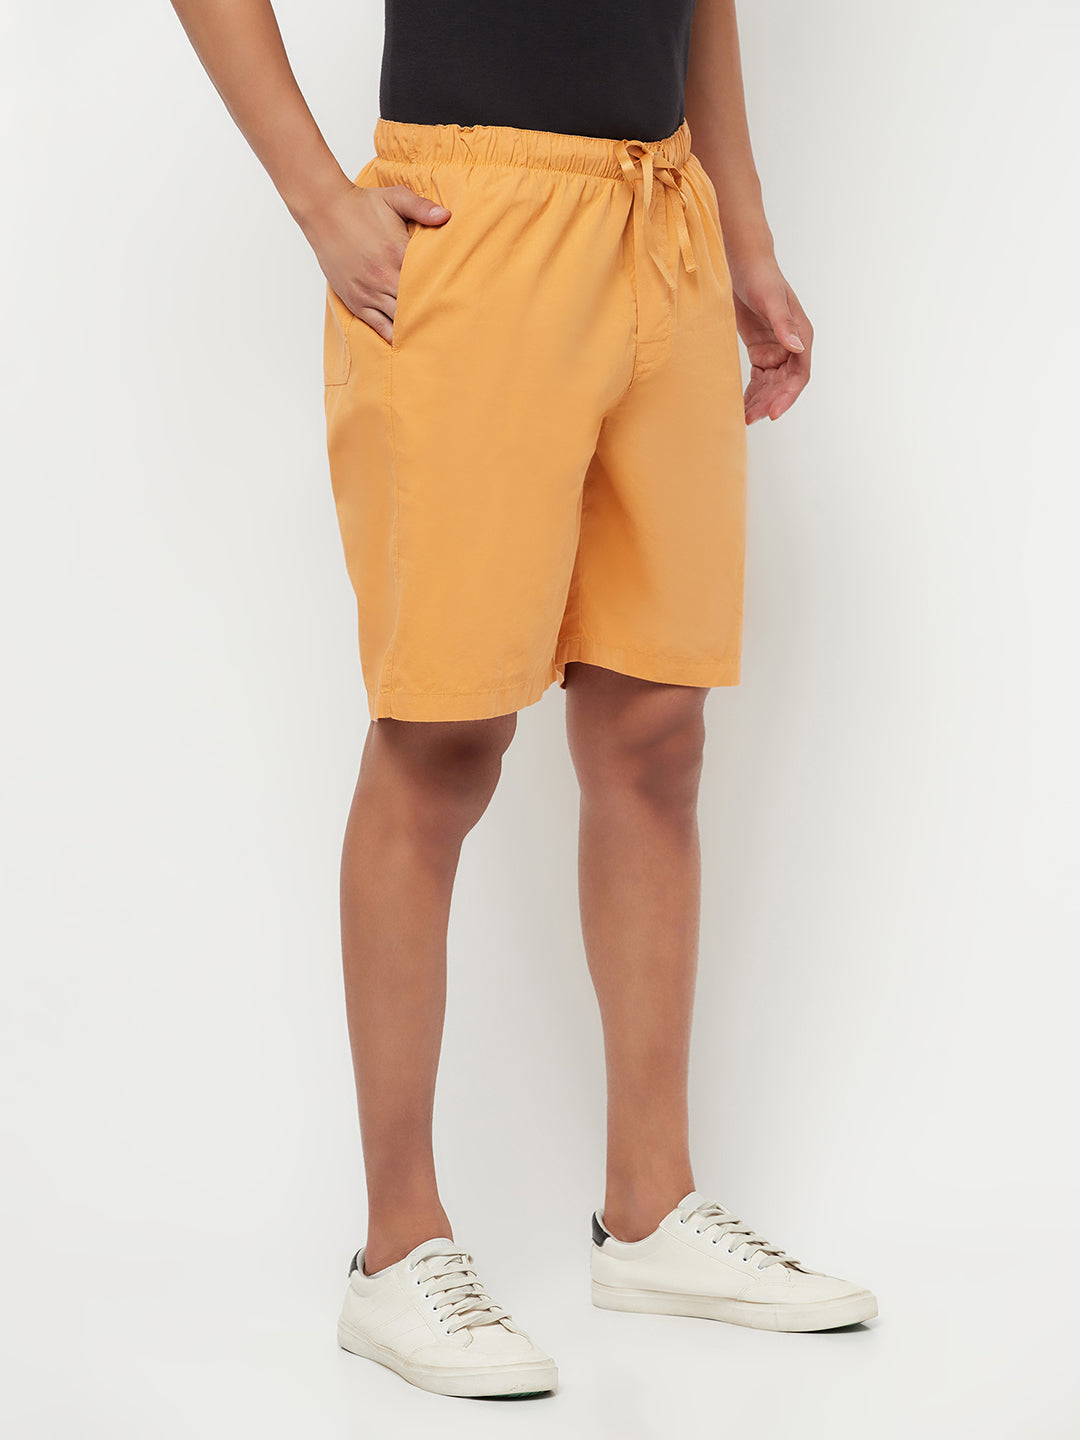 Orange Lounge Shorts - Men Lounge Shorts